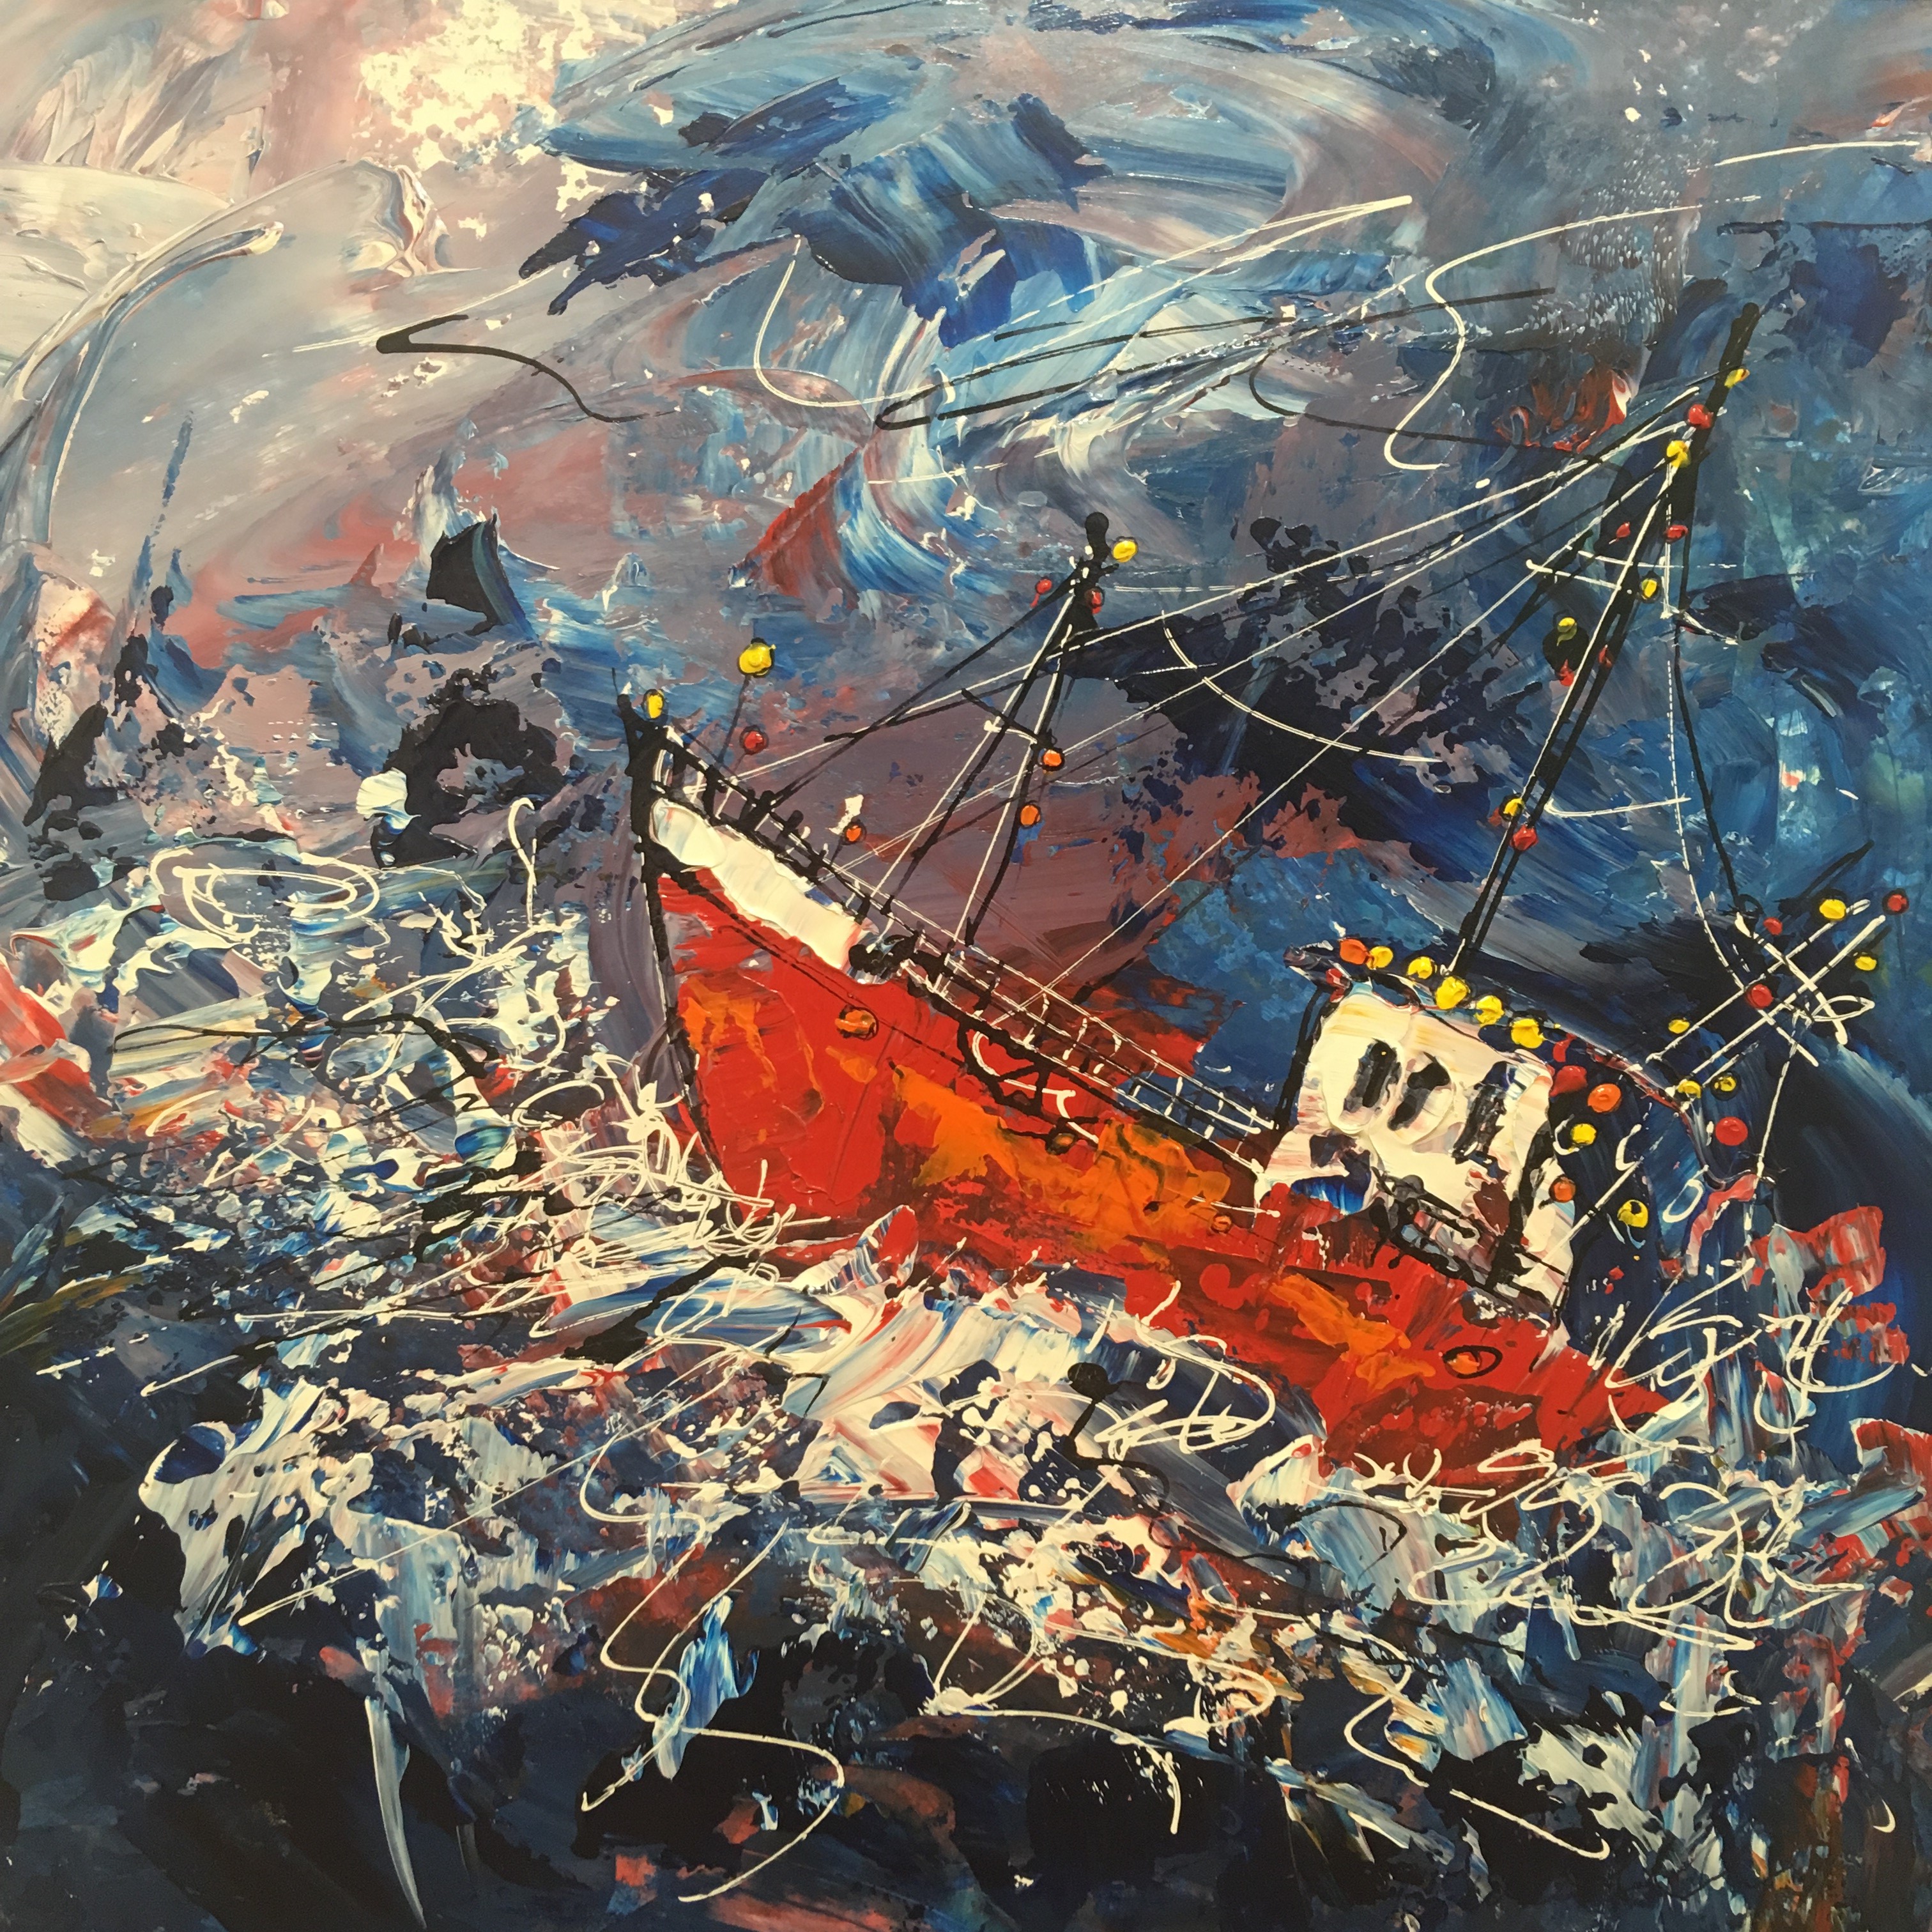 'Rough Seas' by artist Martin John Fowler